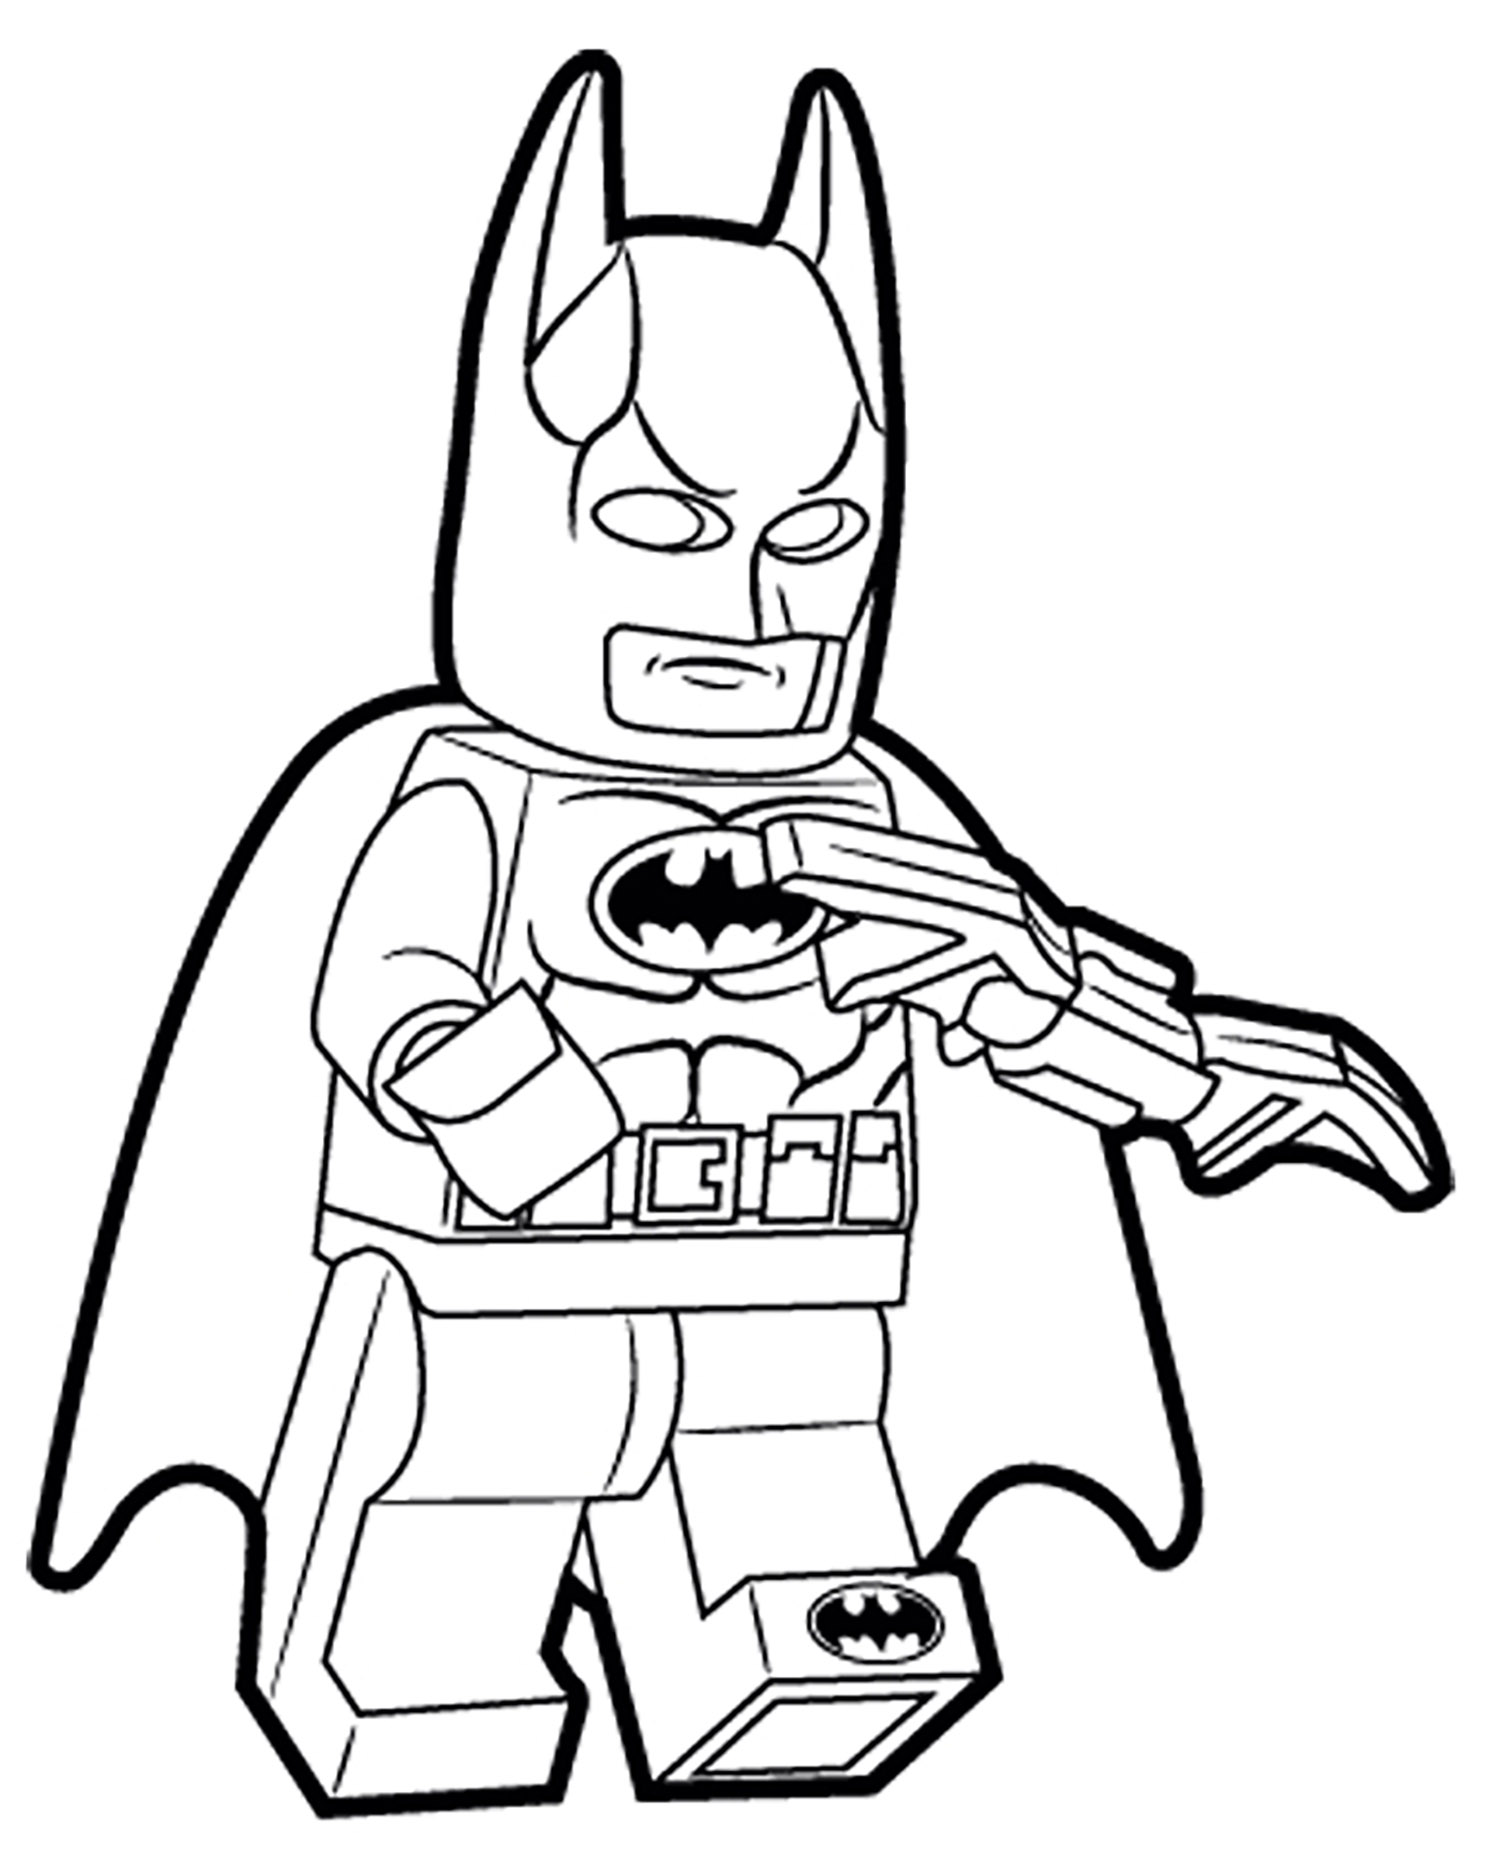 Lego Batman coloring pages for kids Lego Batman Kids Coloring Pages